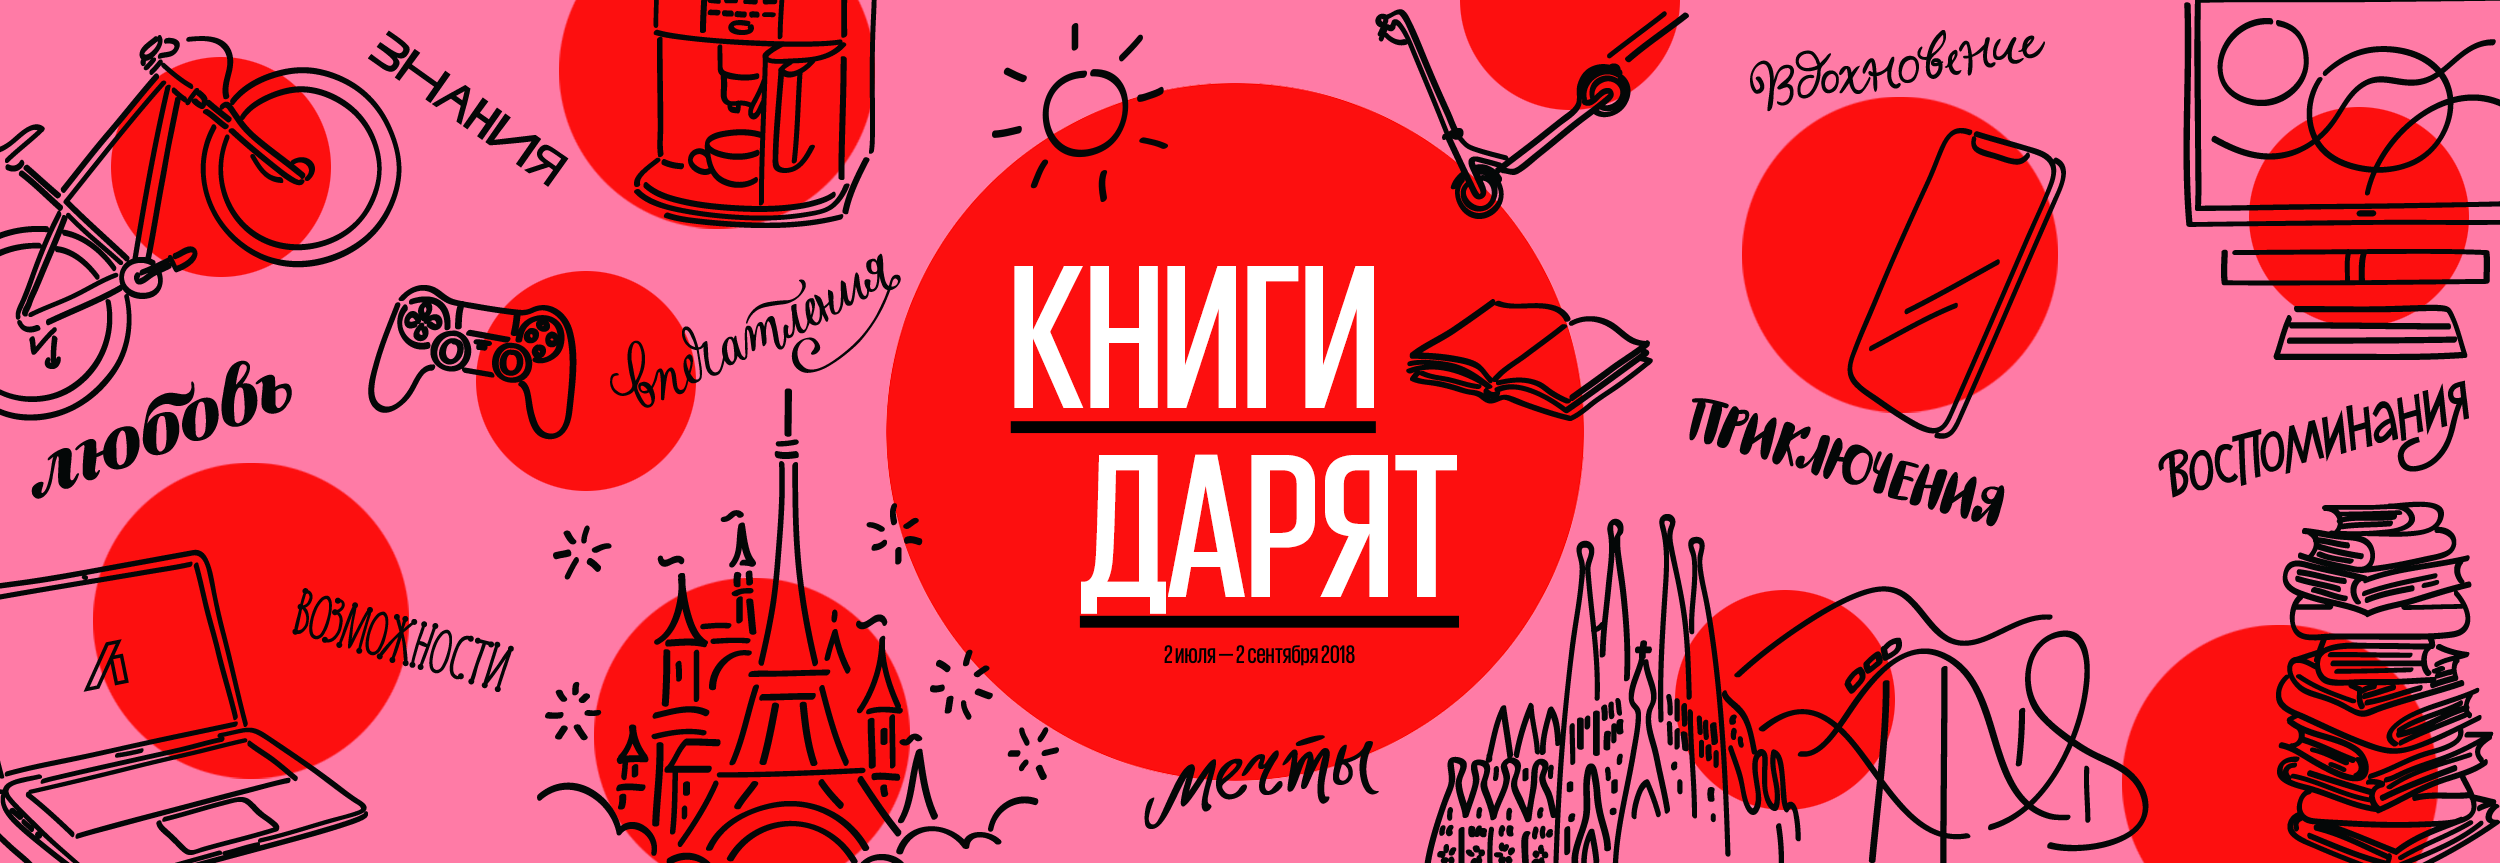 Рекламная акция labirint.ru (Лабиринт.ру) «Книги дарят»